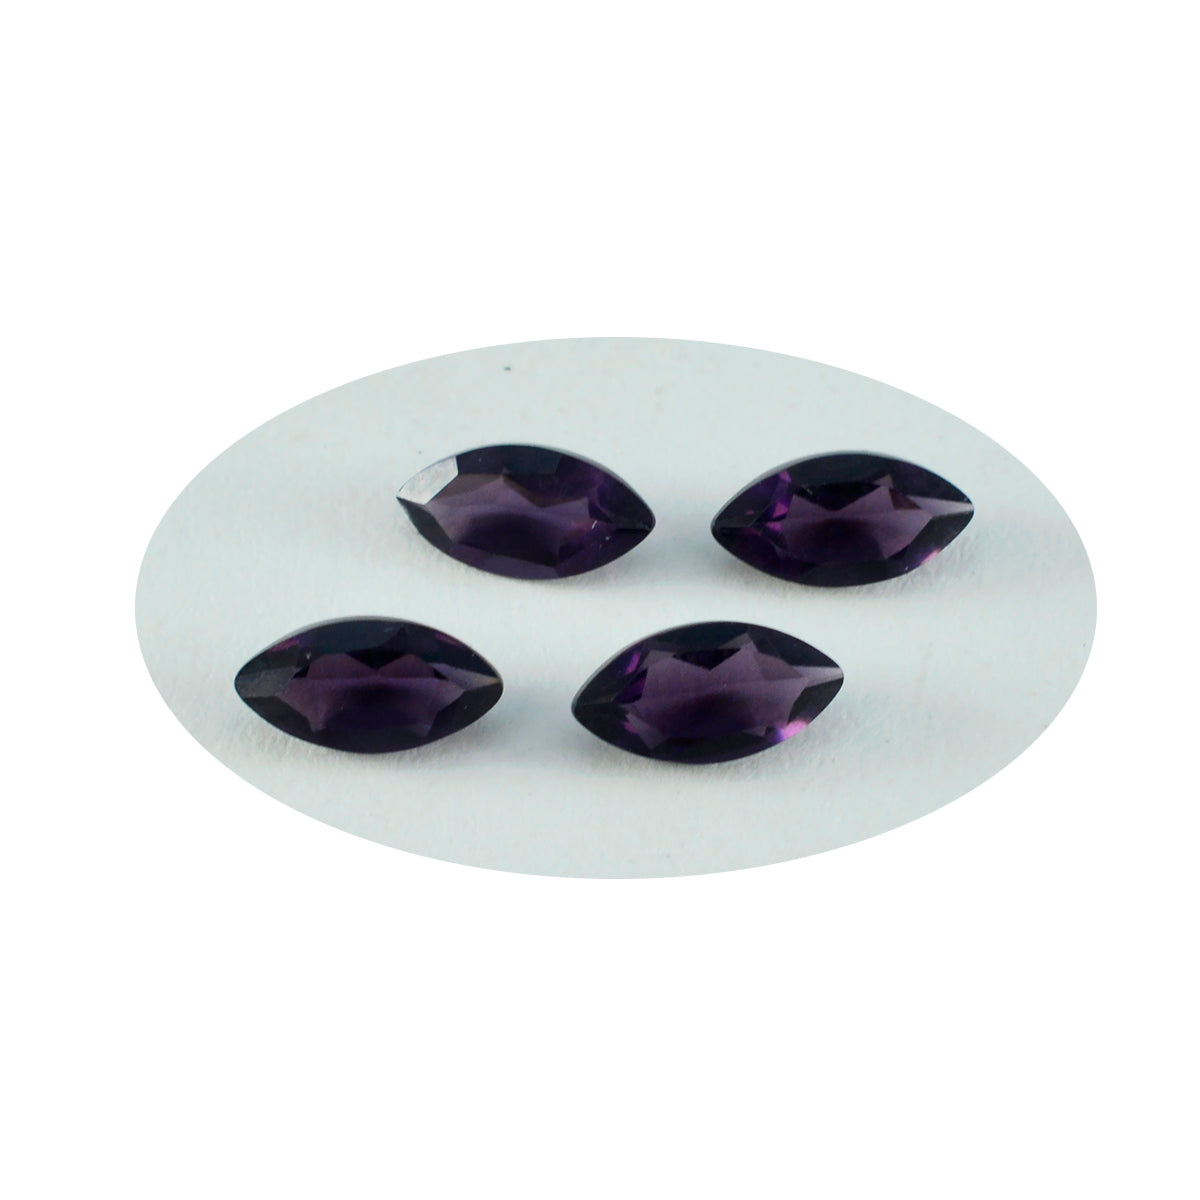 riyogems 1 шт. фиолетовый аметист cz граненый 9x18 мм форма маркиза, довольно качественный свободный драгоценный камень